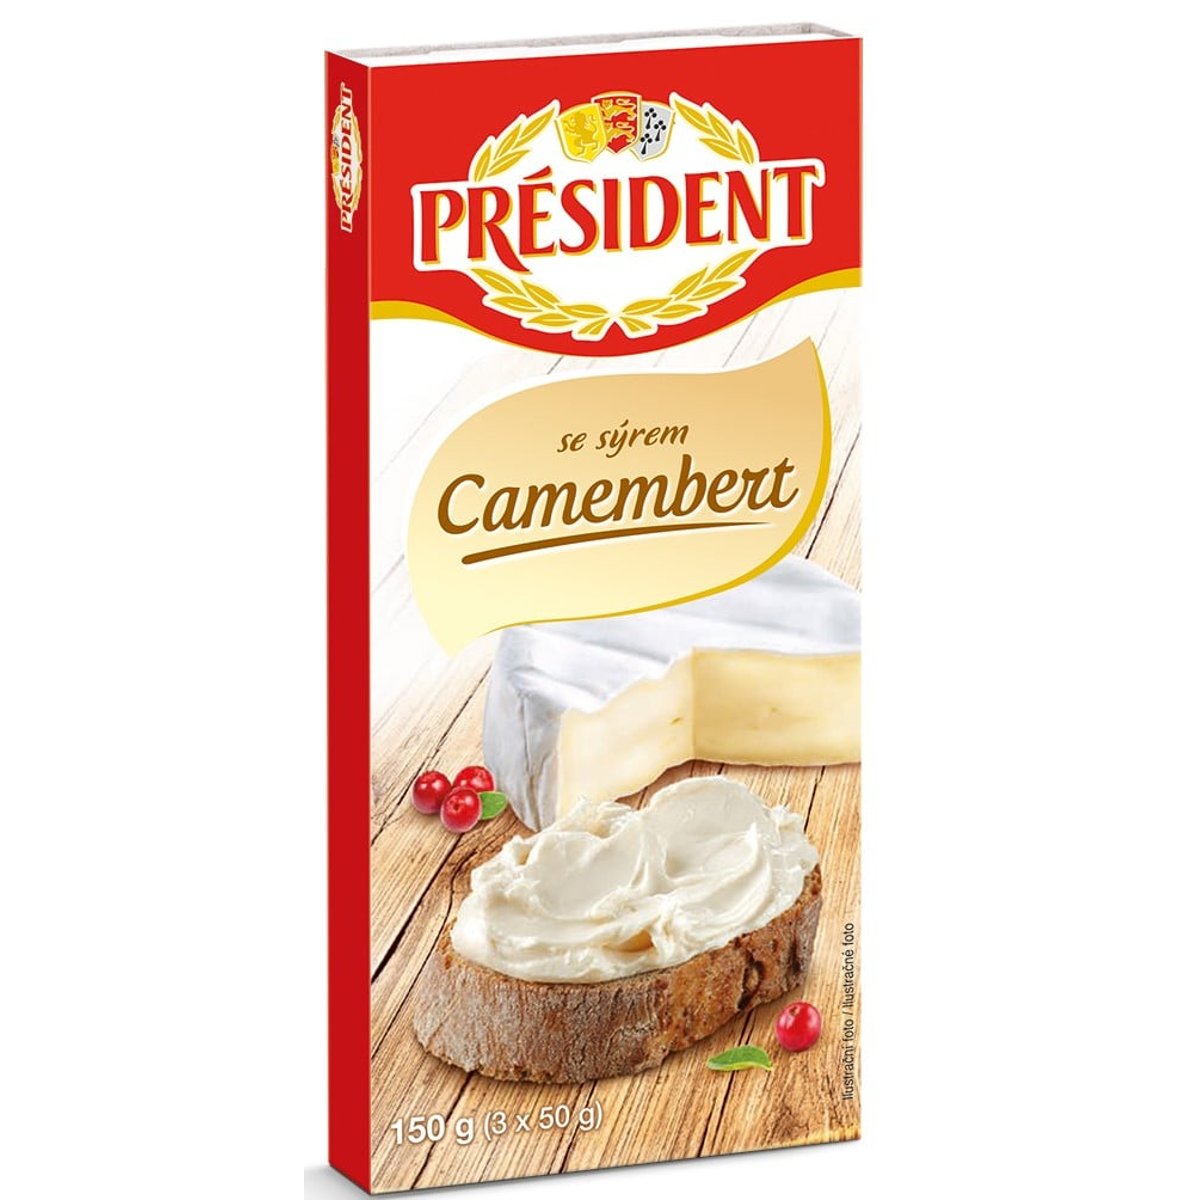 Président Tavený sýr Camembert